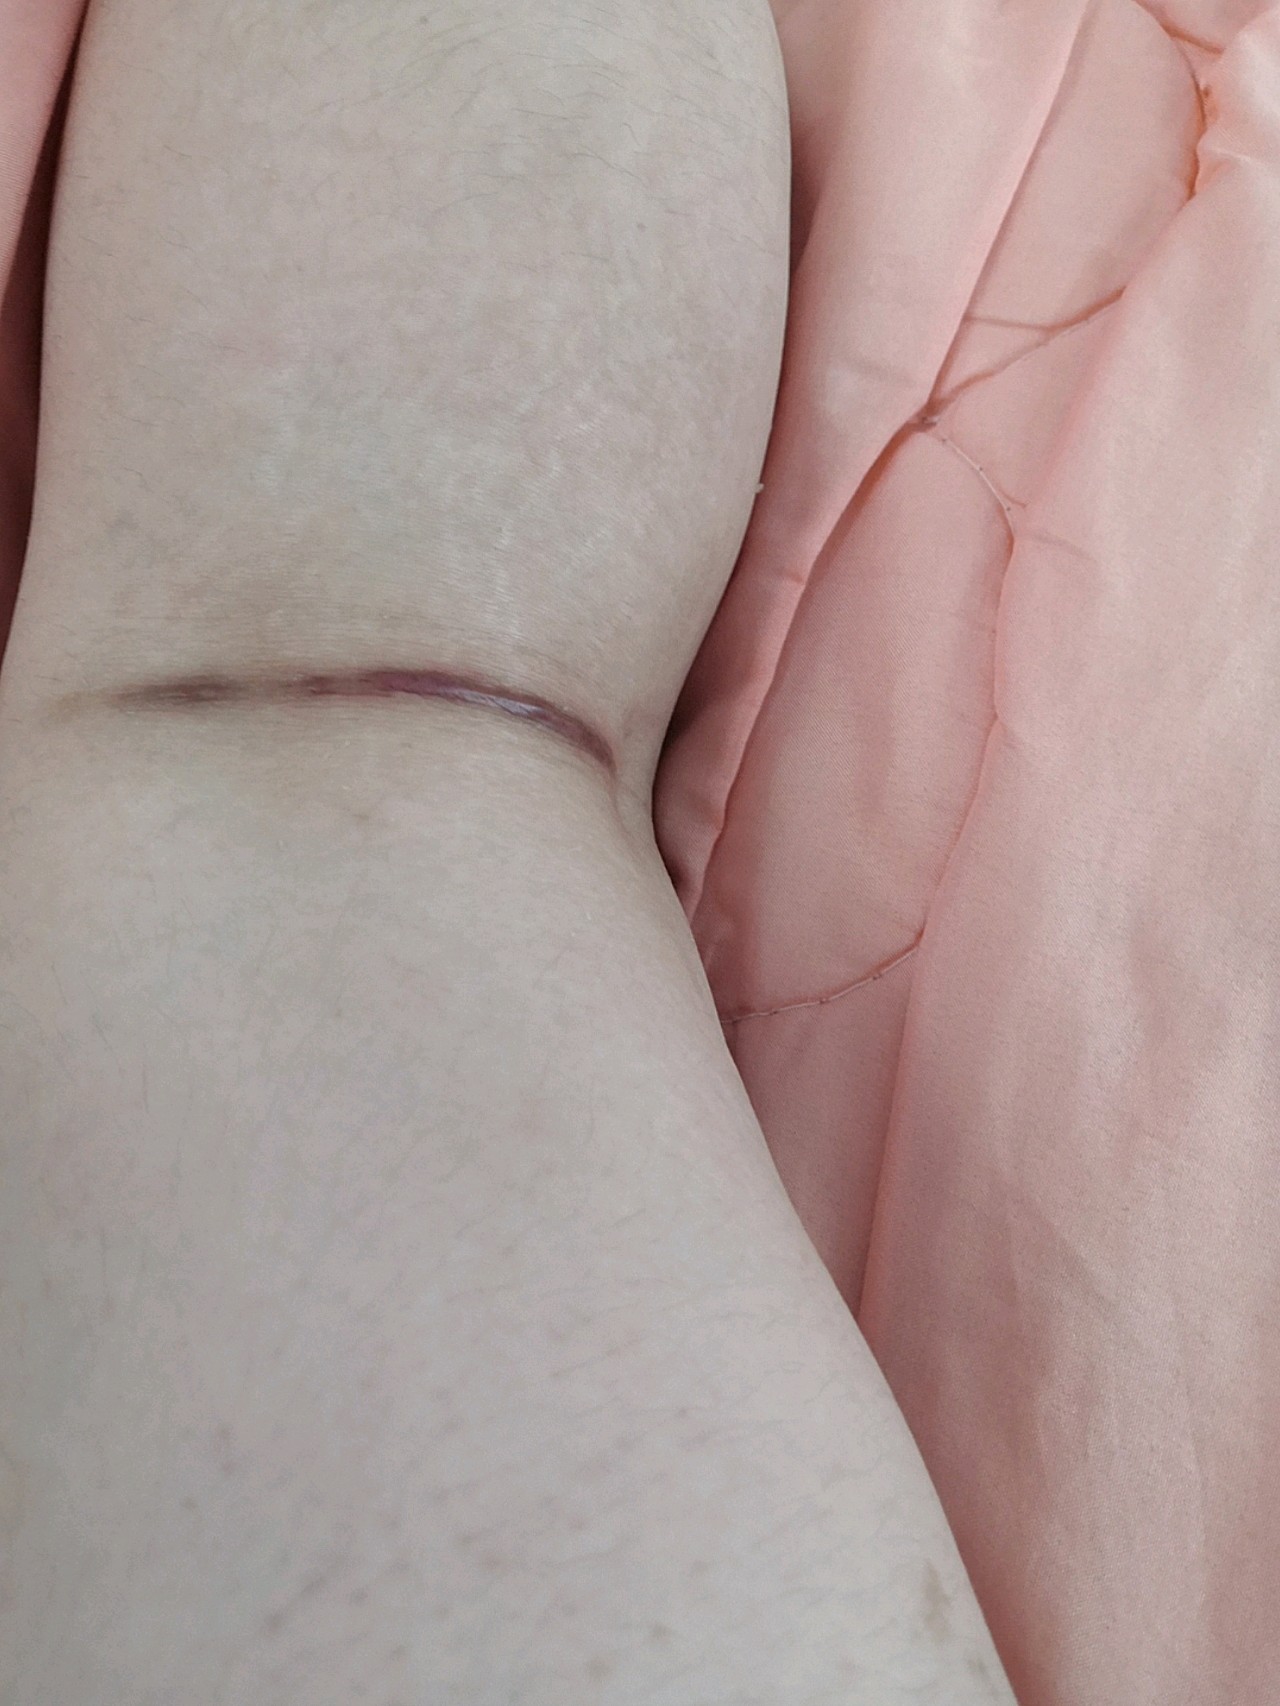 大腿抽脂后的疤痕照片图片